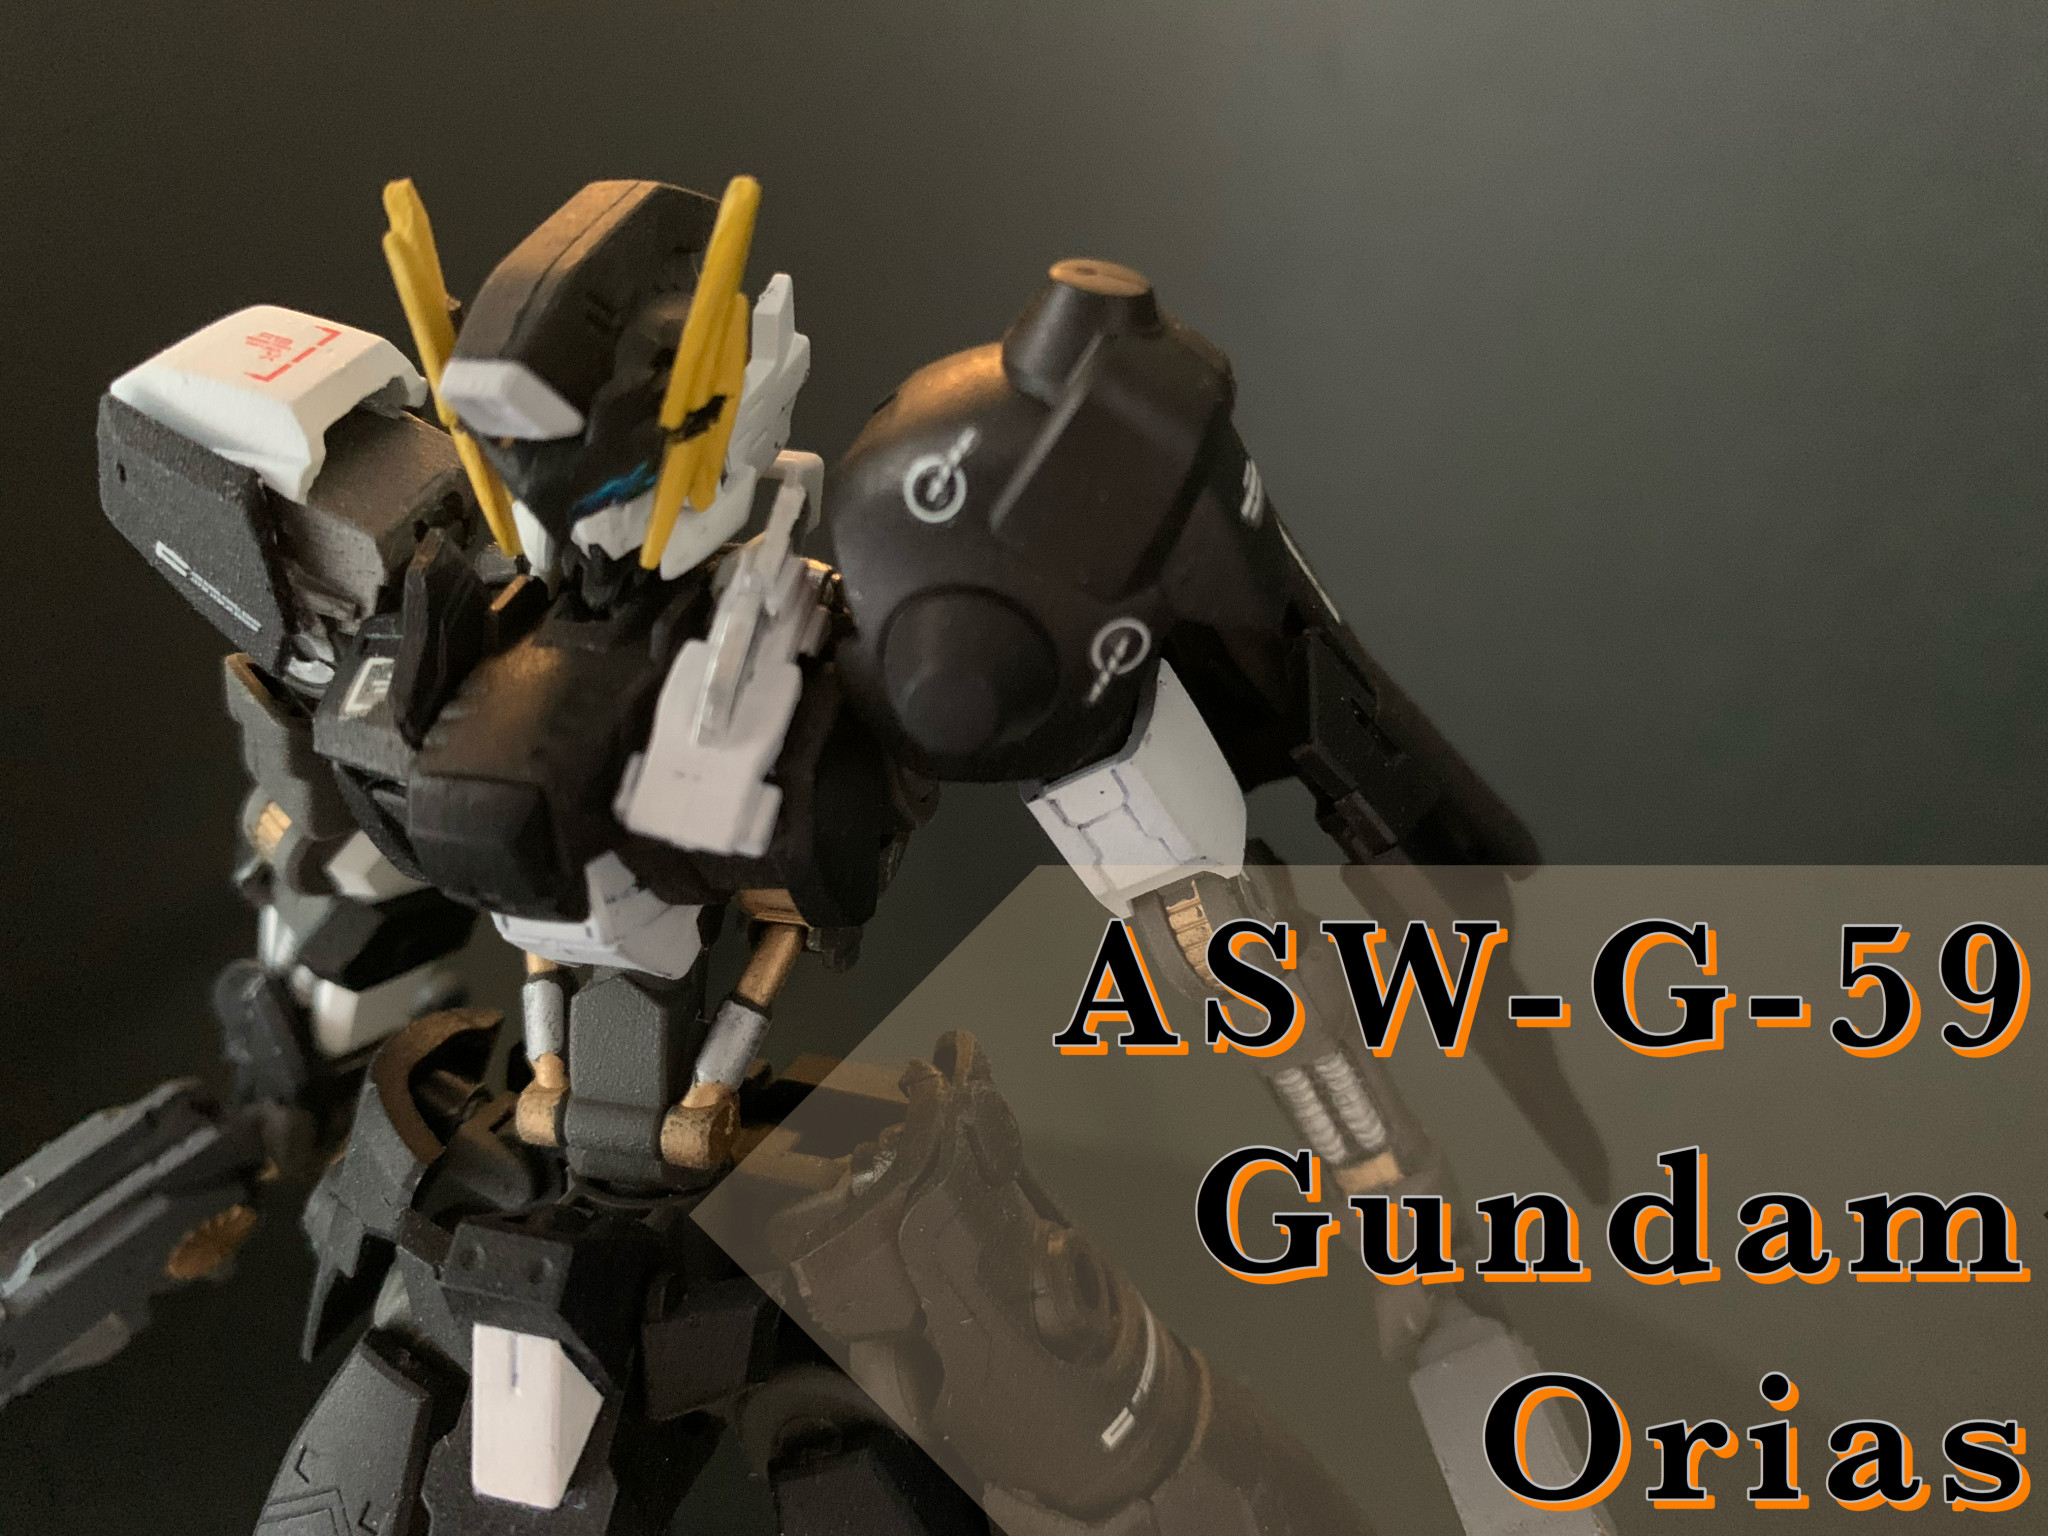 ASW-G-59 GUNDAM ORIAS